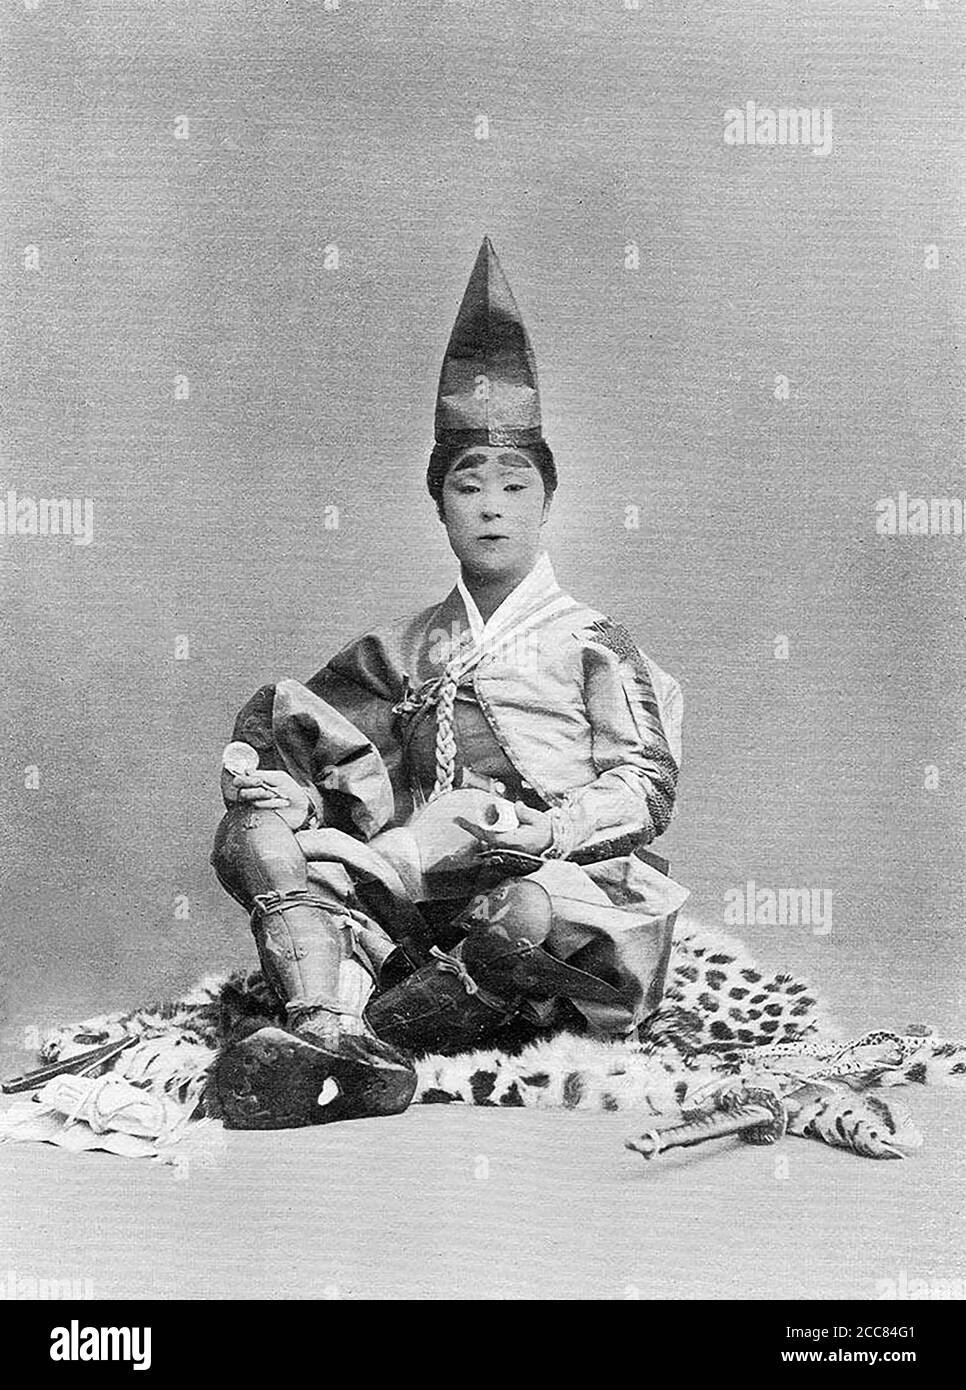 Japan: 'Ein junger Krieger der Kamakura-Ära'. Chemigraph aus der Serie 'Military Costumes in Old Japan' von Kazumasa Ogawa (1860-1929), 1893, Tokio. Ogawa Kazumasa, auch bekannt als Ogawa Kazuma oder Ogawa Isshin, war ein japanischer Fotograf, Chemigraph, Drucker und Verleger der Meiji-Ära. Er war ein Pionier im photomechanischen Druck und der Fotografie und wurde in den Samurai-Clan von Matsudaira geboren, wo er im Alter von 15 Jahren Englisch und Fotografie studierte. Stockfoto